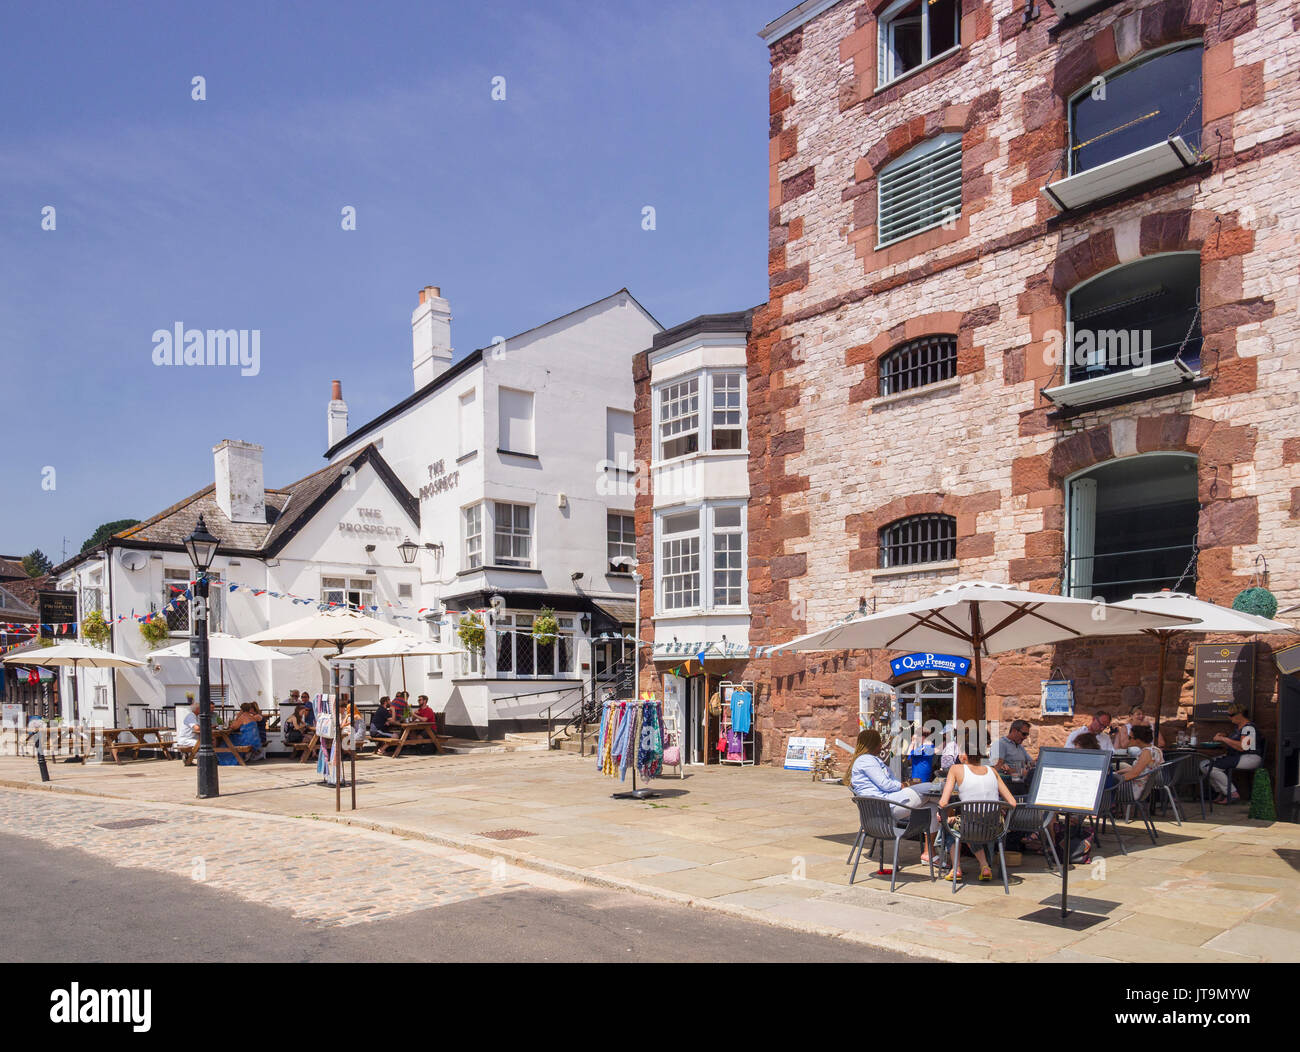 21 Giugno 2017: Exeter Devon, Inghilterra, Regno Unito - Pub e ristoranti a Exeter Quay in una bella giornata d'estate. Foto Stock